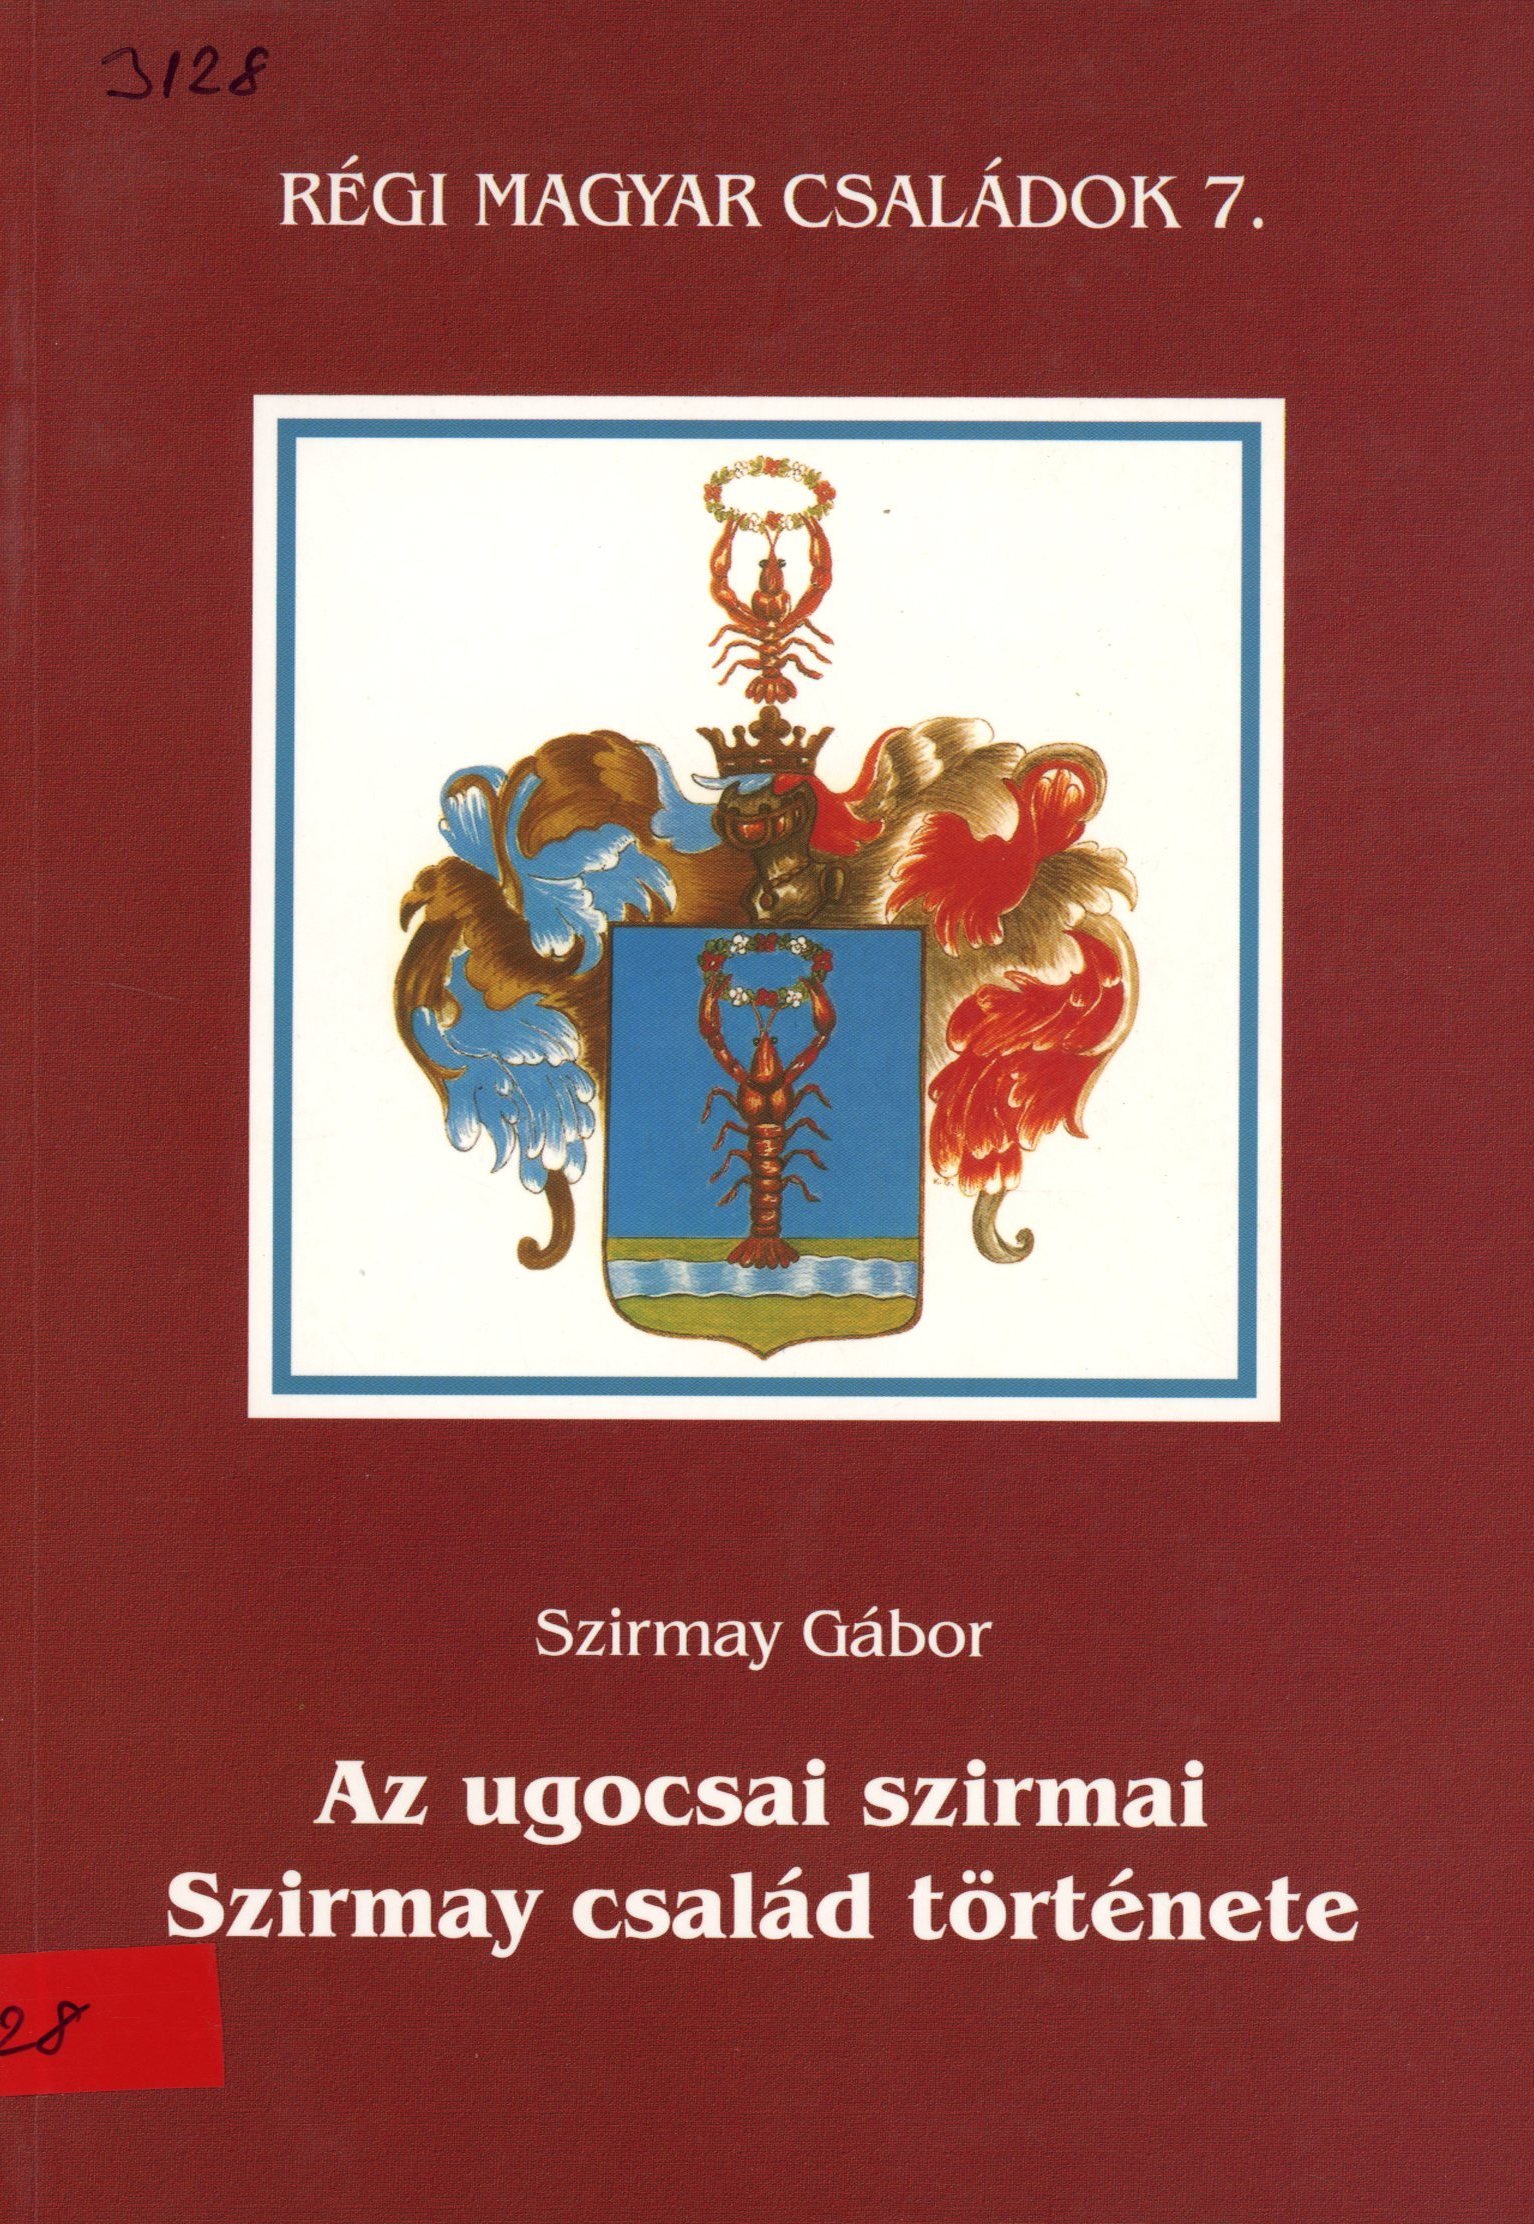 Szirmay Gábor (Erkel Ferenc Múzeum és Könyvtár, Gyula CC BY-NC-SA)